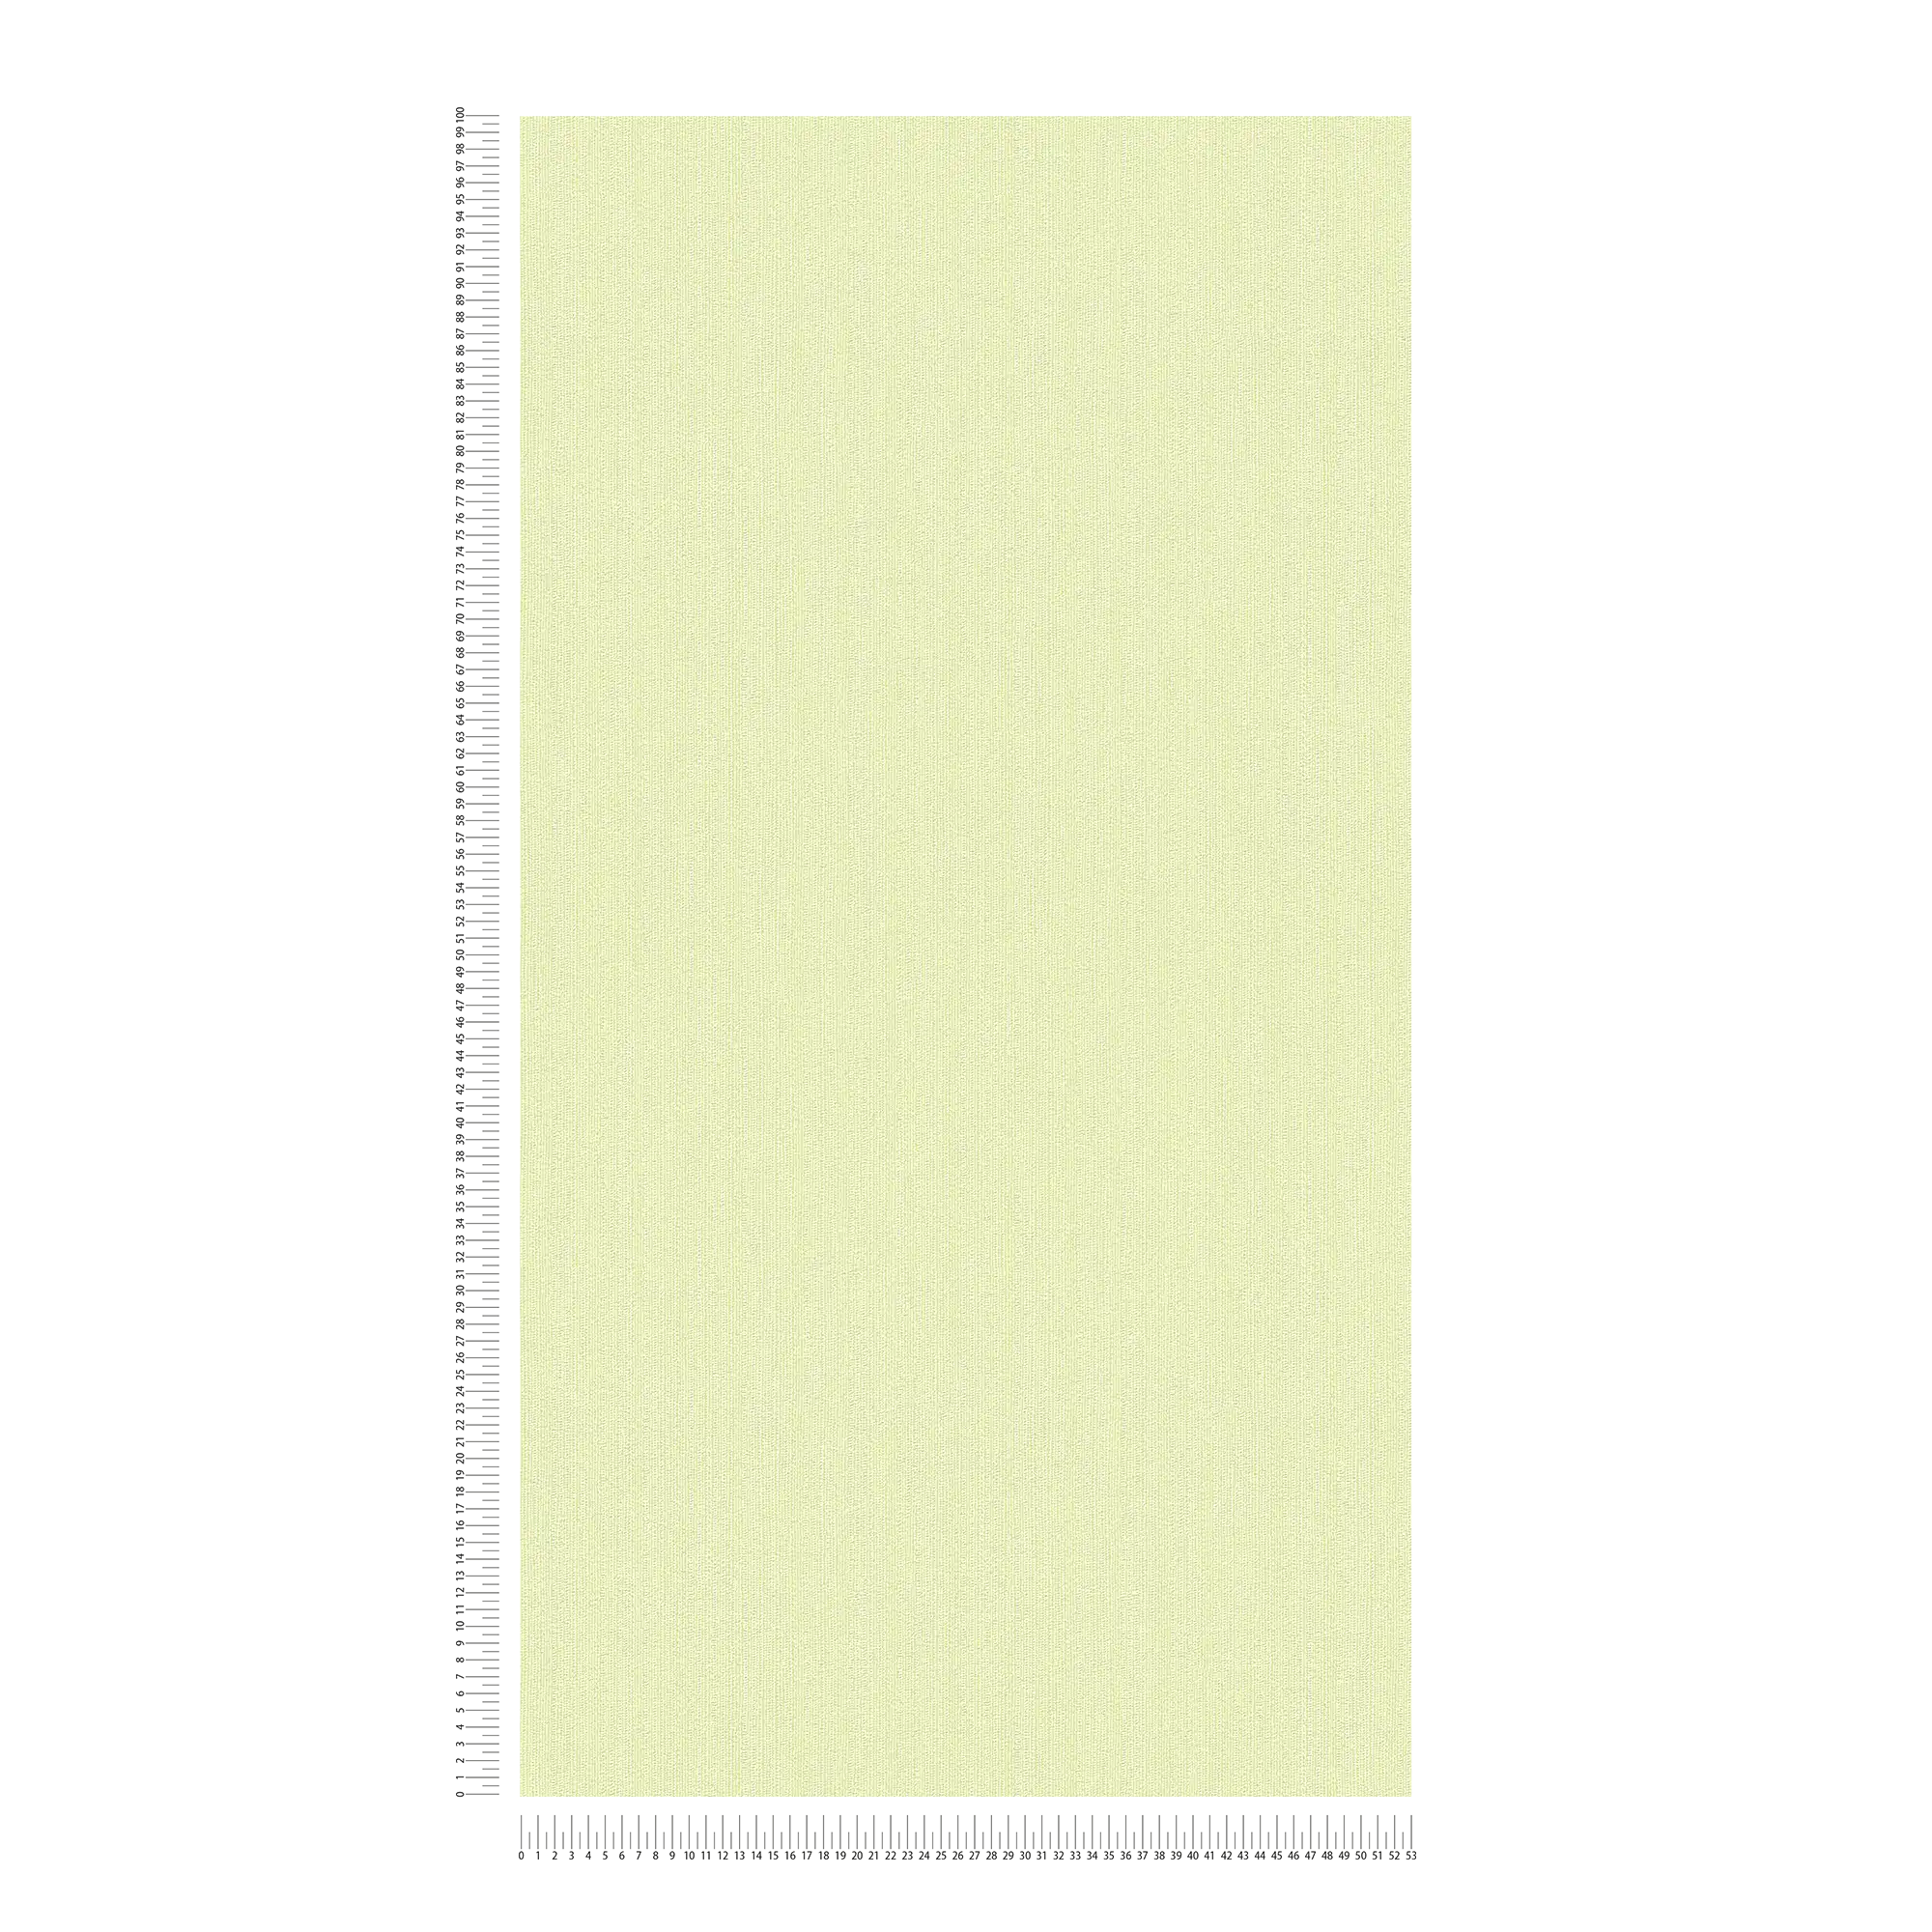             Papel pintado no tejido de color verde con un sutil dibujo texturizado
        